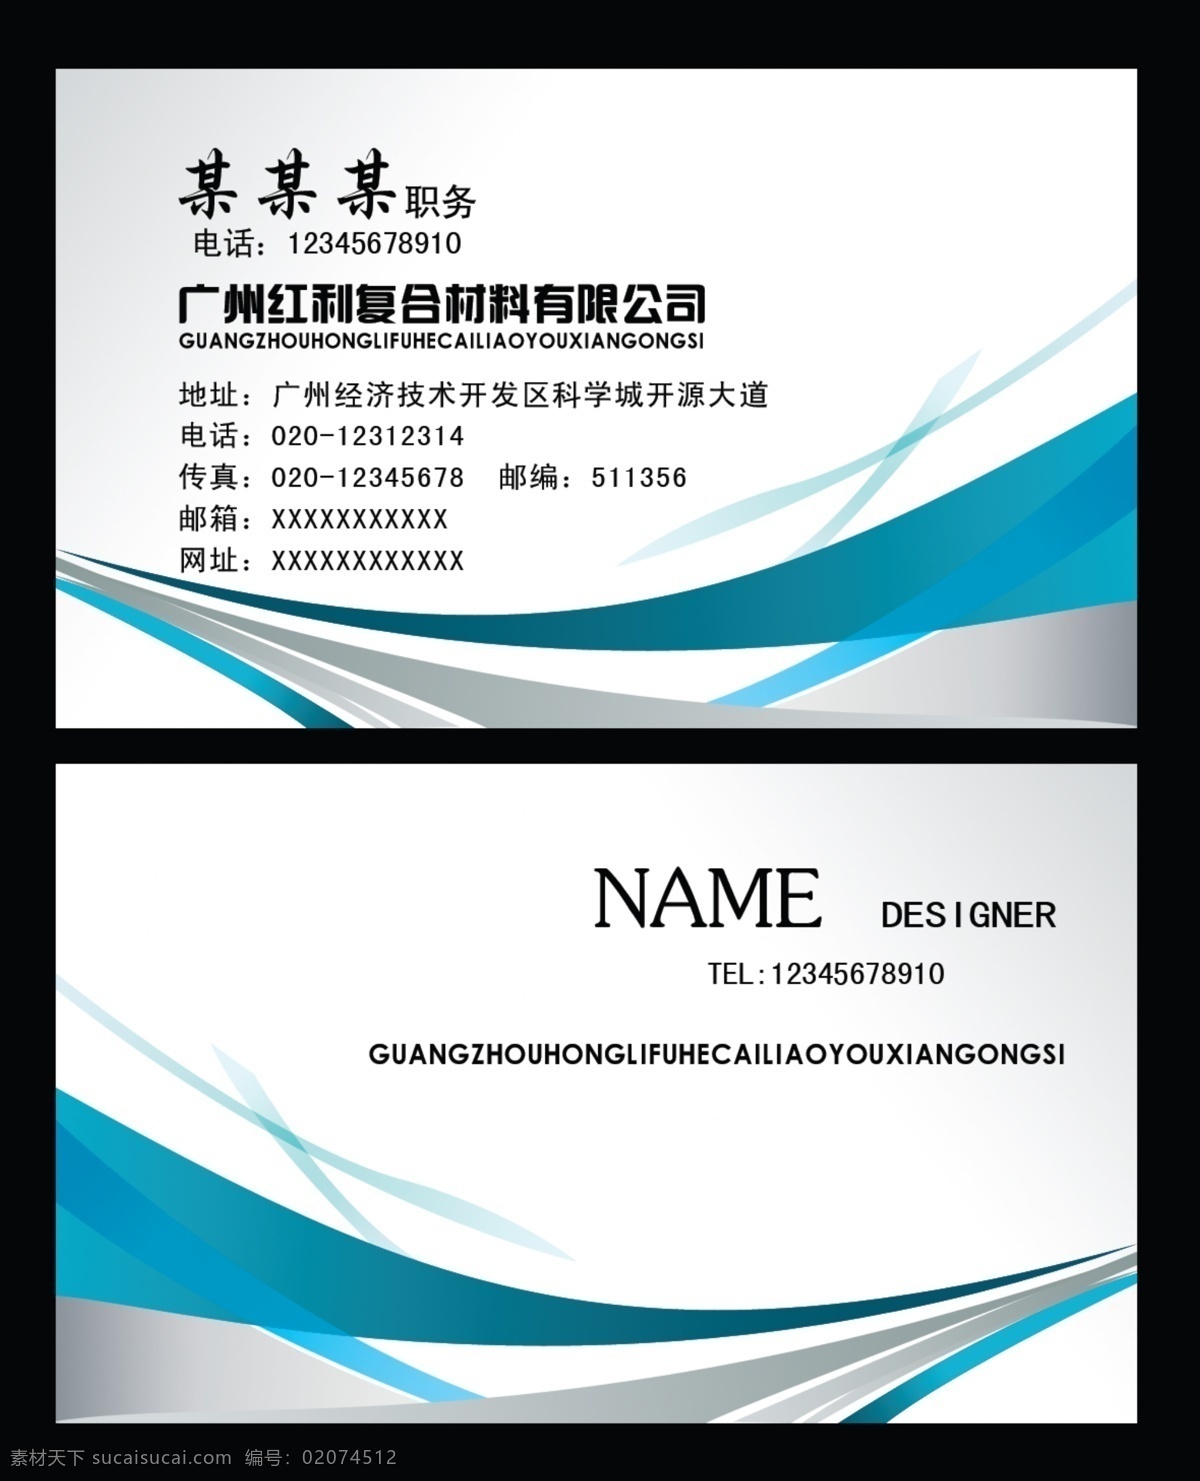 复合材料 公司 名片 英文 蓝色 蓝色条纹 名片卡片 广告设计模板 源文件